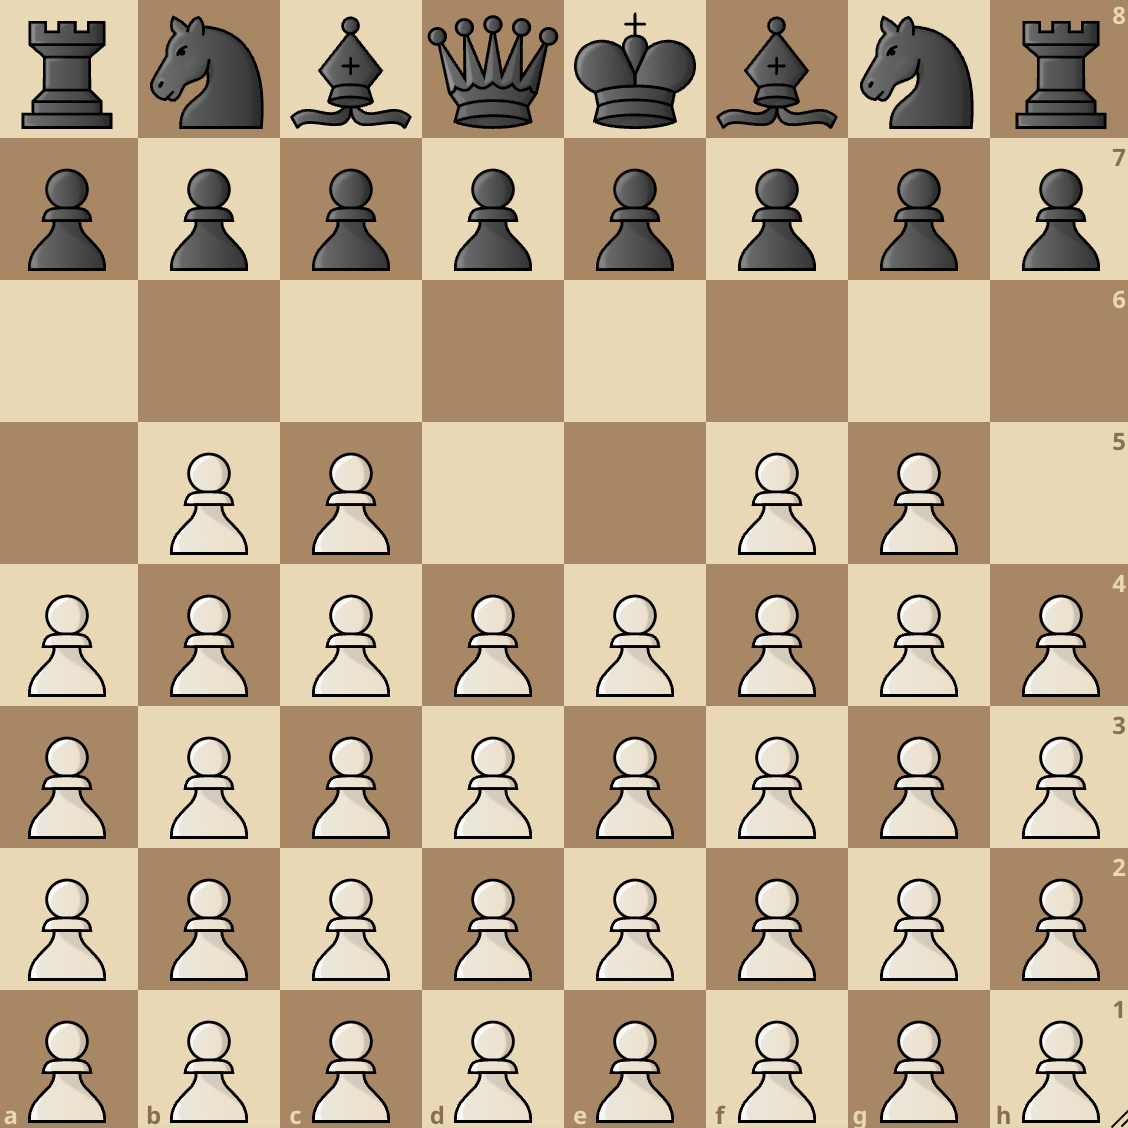 Horde Chess